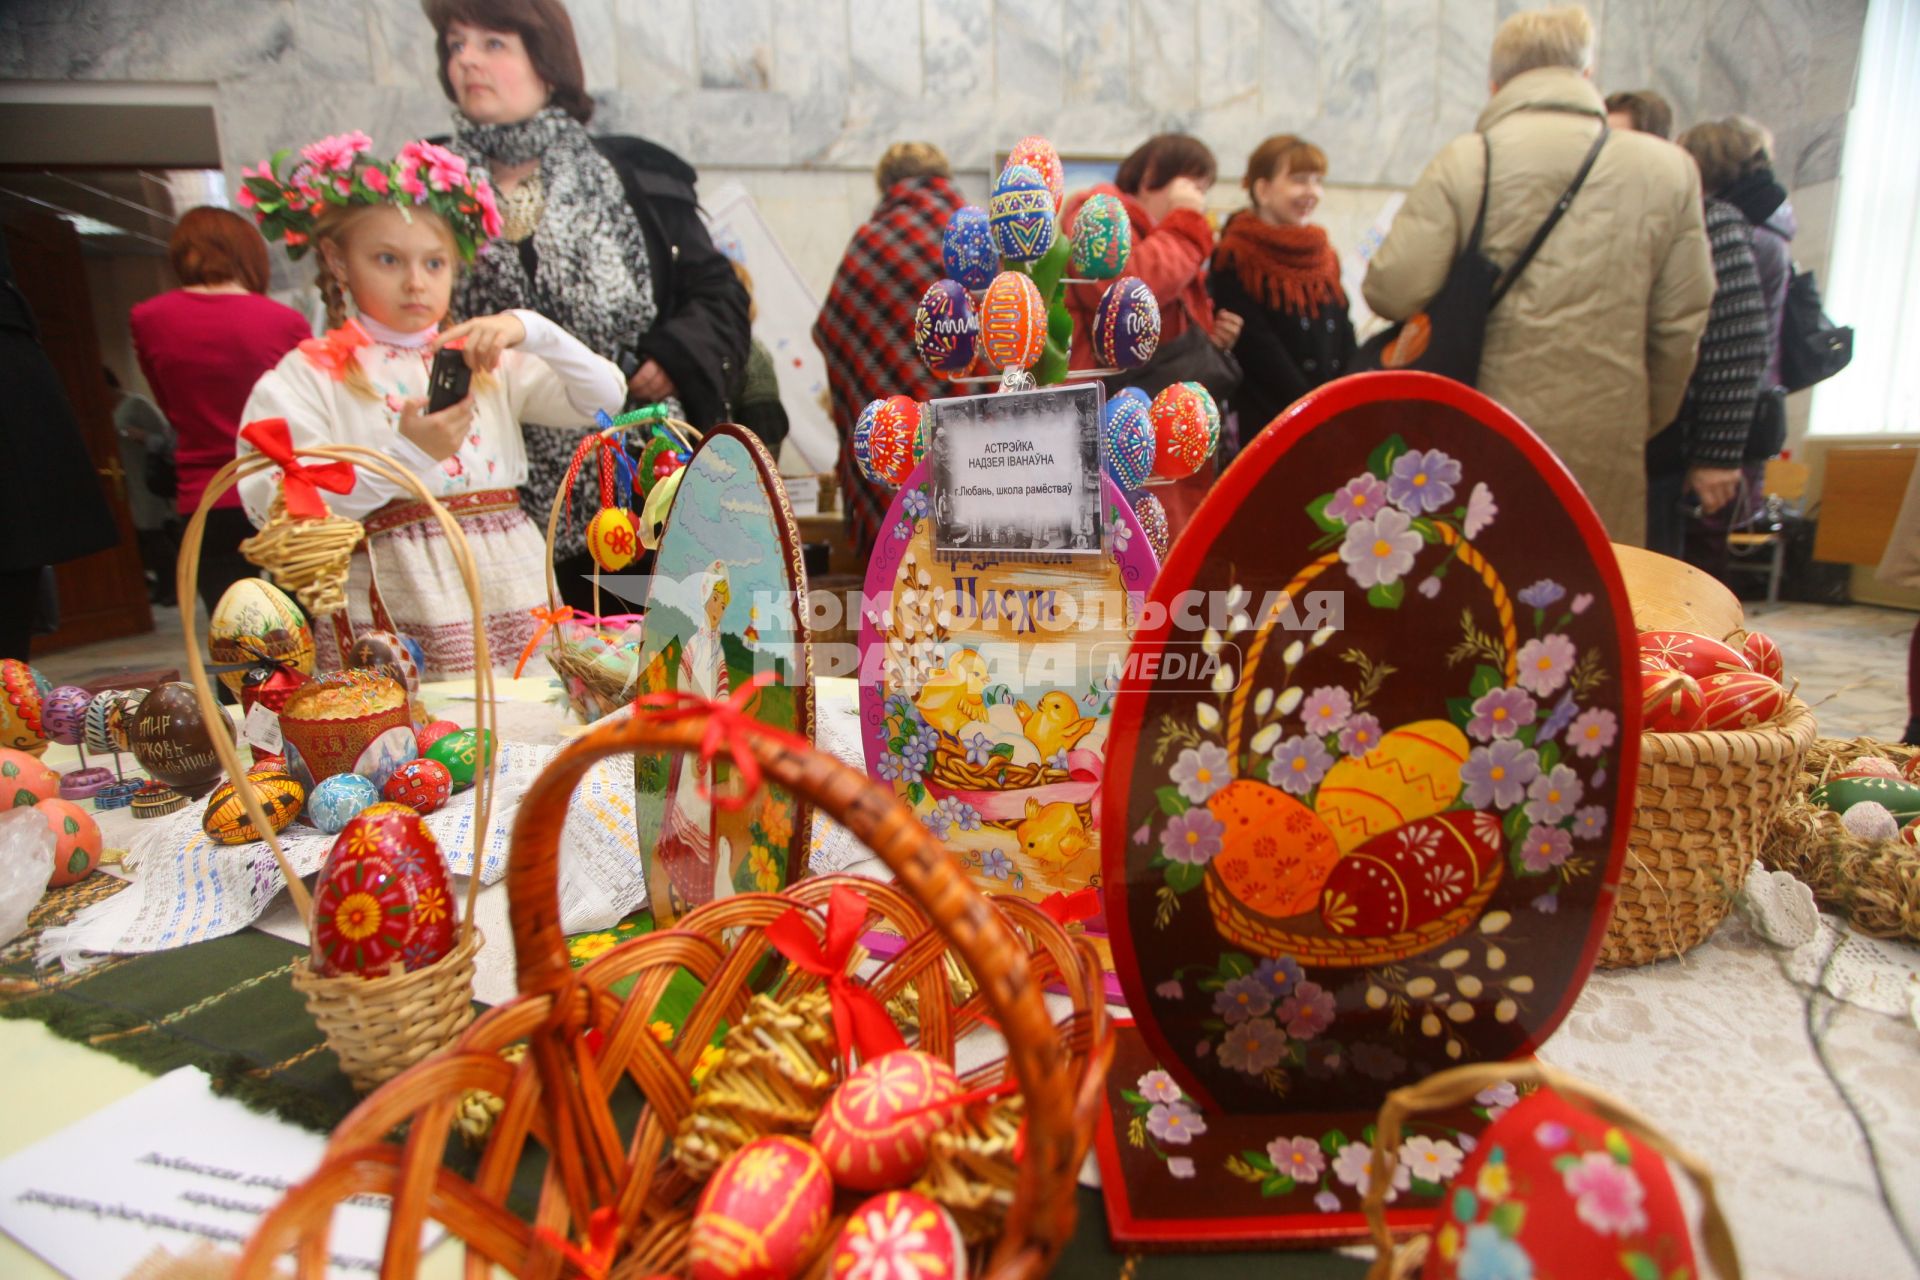 Девочка в национальной одежде фотографирует экспозицию с украшенными пасхальными яйцами.